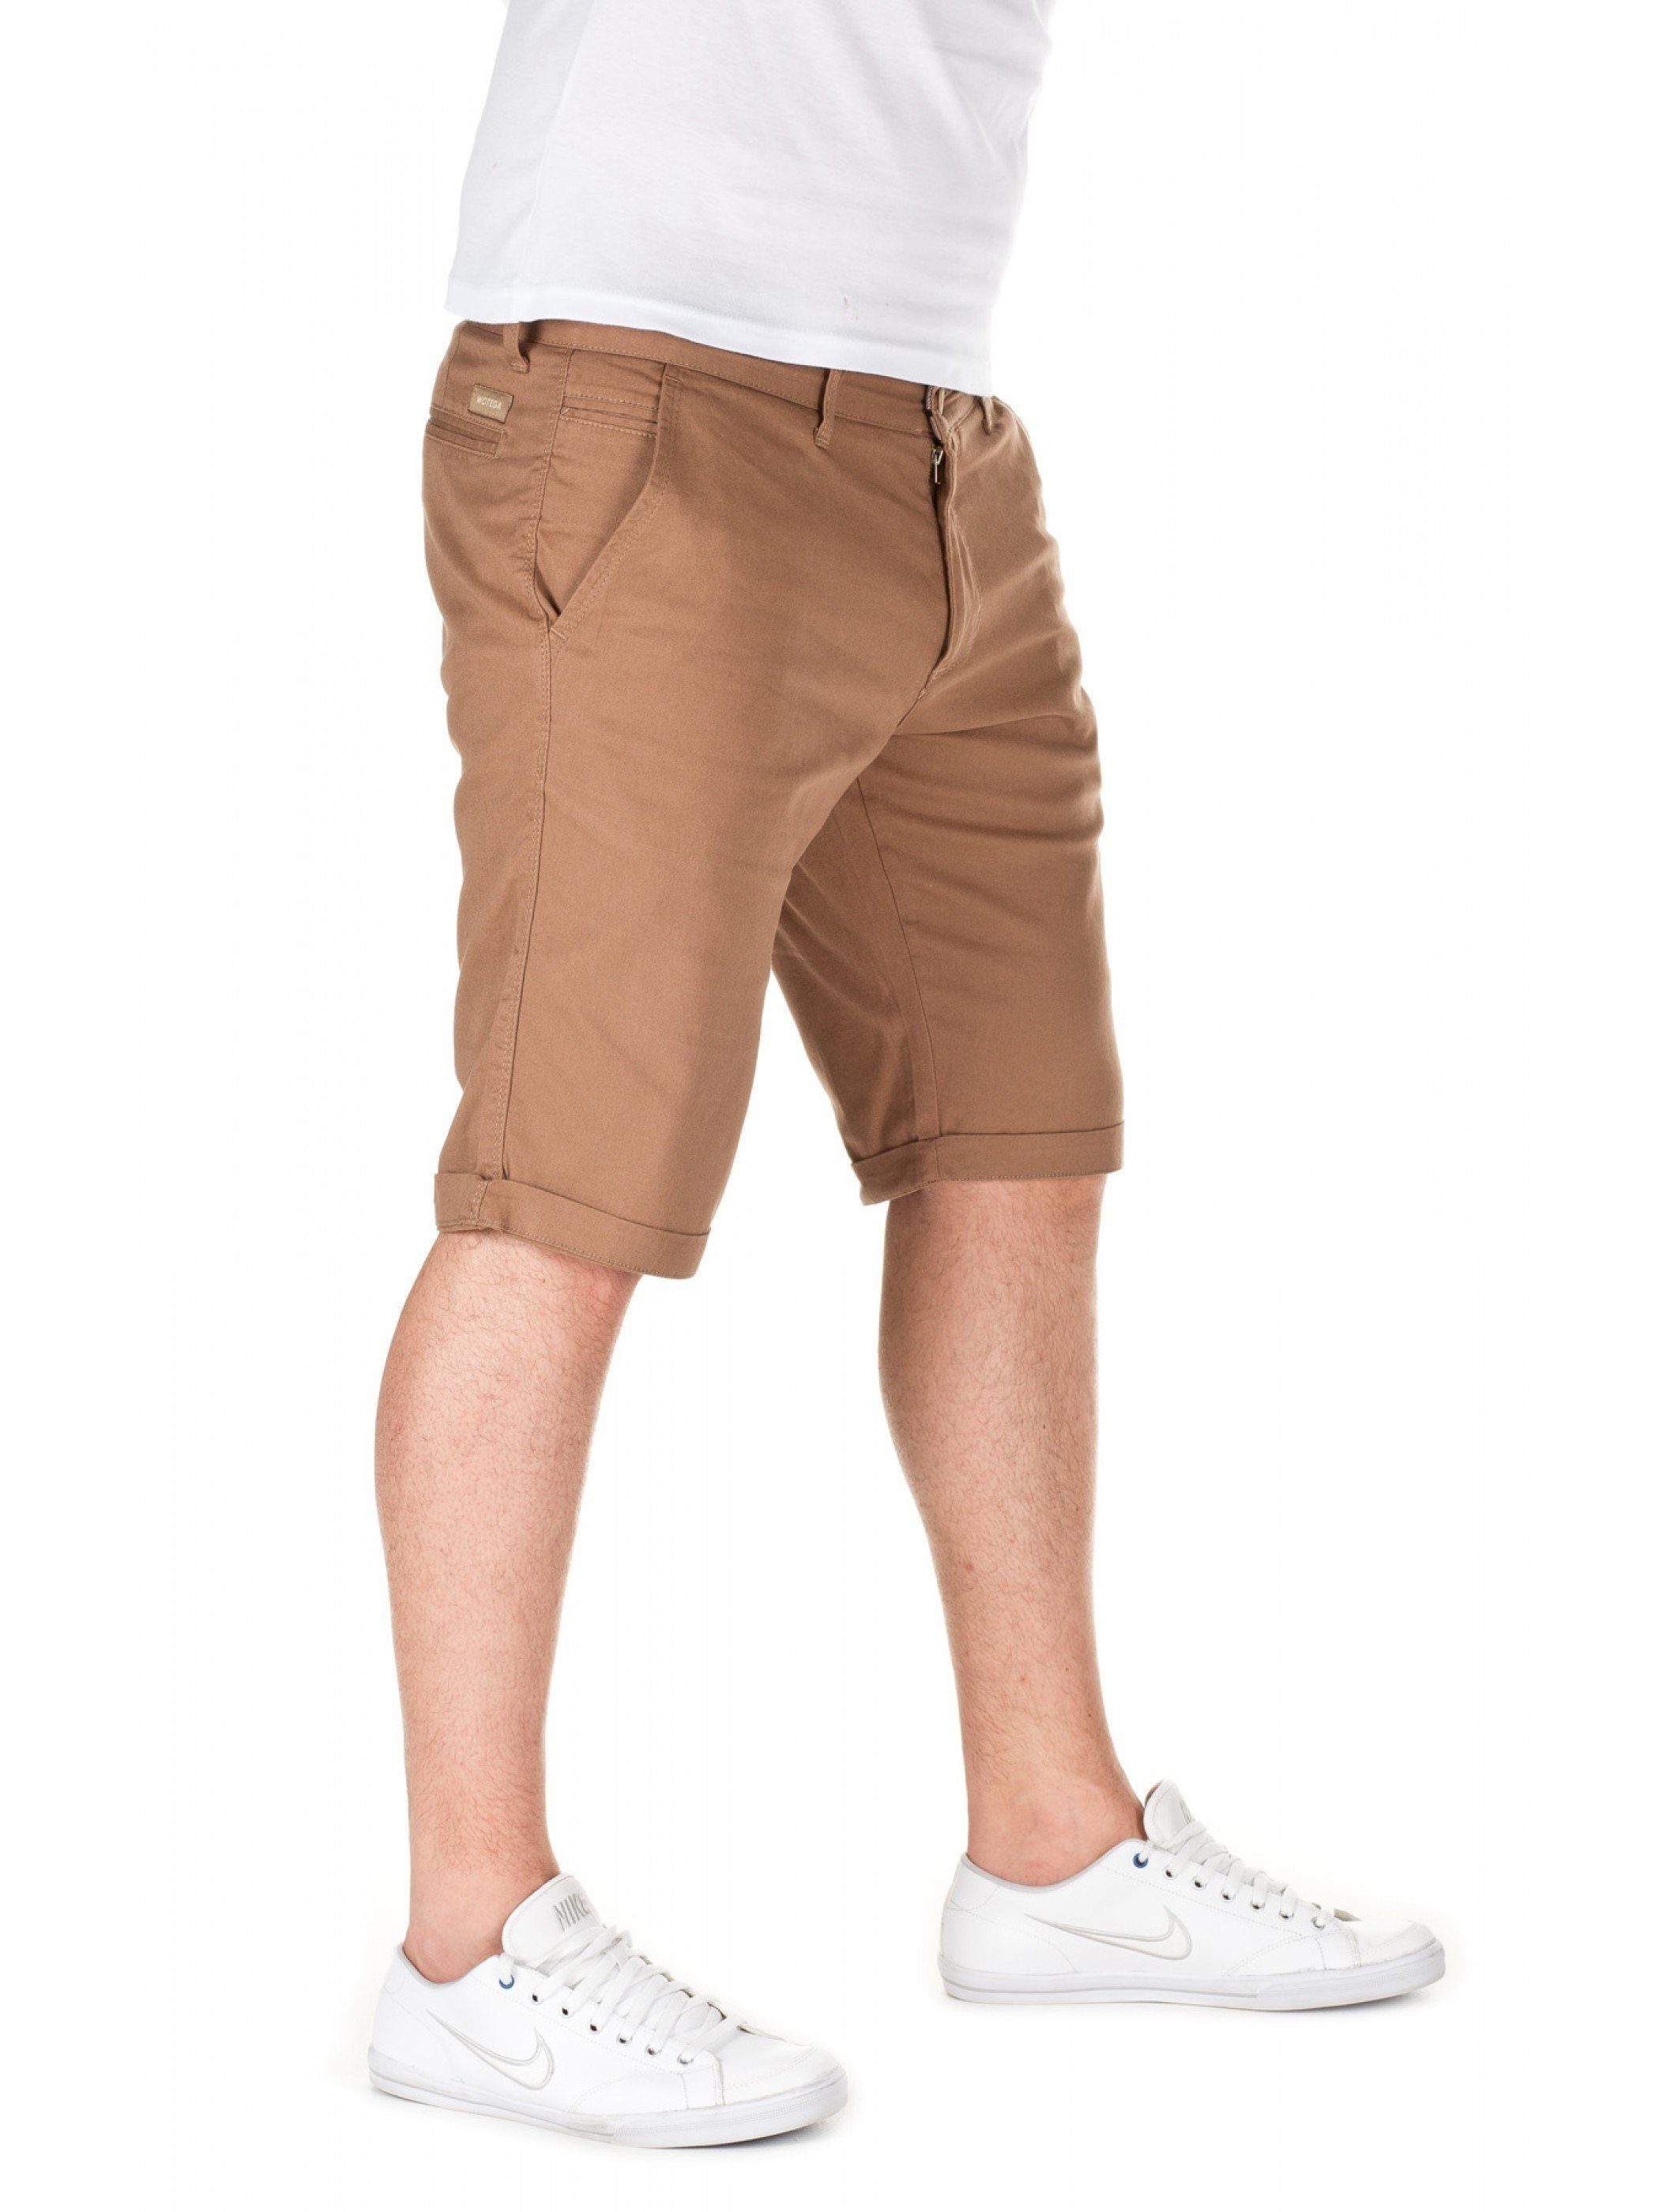 (camel shorts 2000) in Shorts Chino WOTEGA Unifarbe Braun Kallari